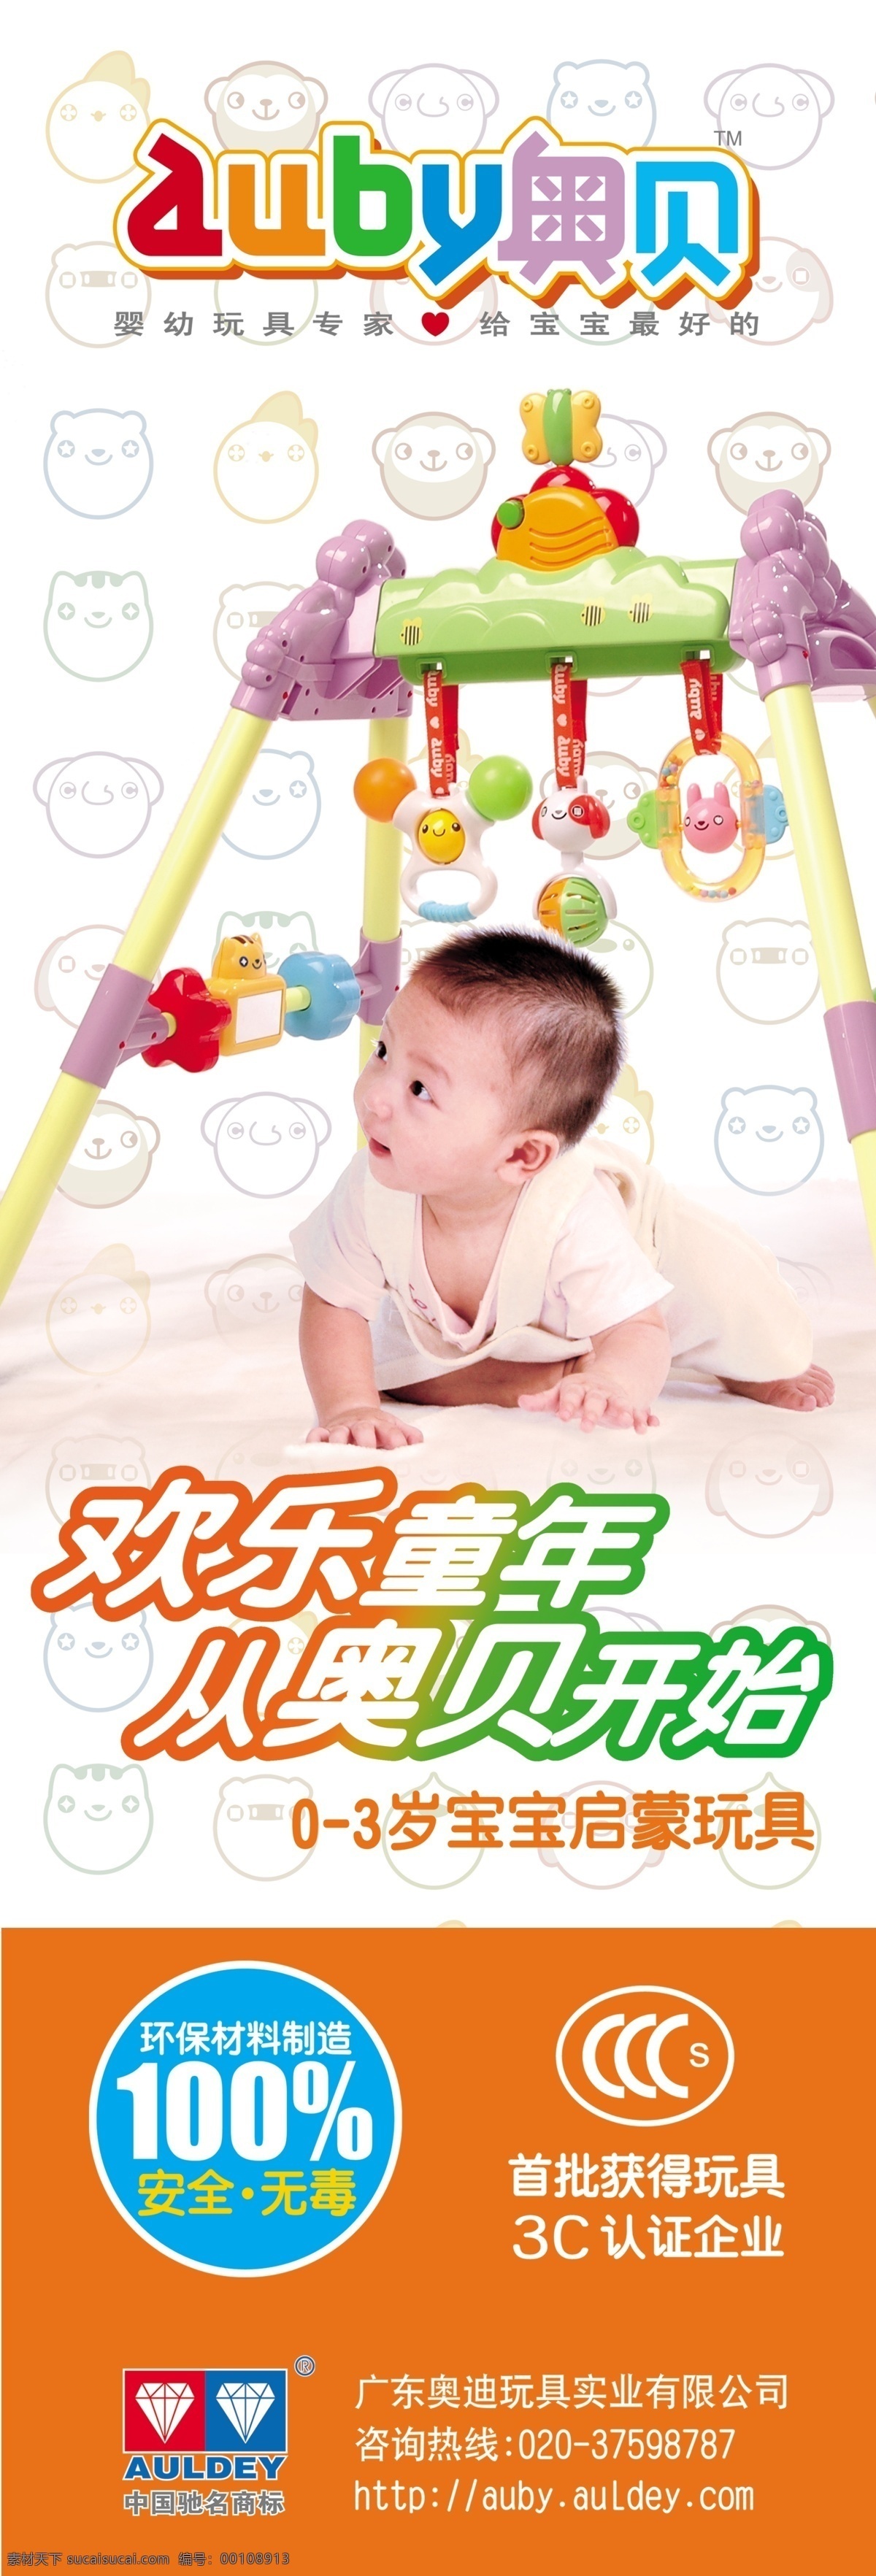 奥贝 儿童玩具 海报 宝宝启蒙玩具 可爱小宝宝 3c 企业 认证 标志 广告设计模板 源文件